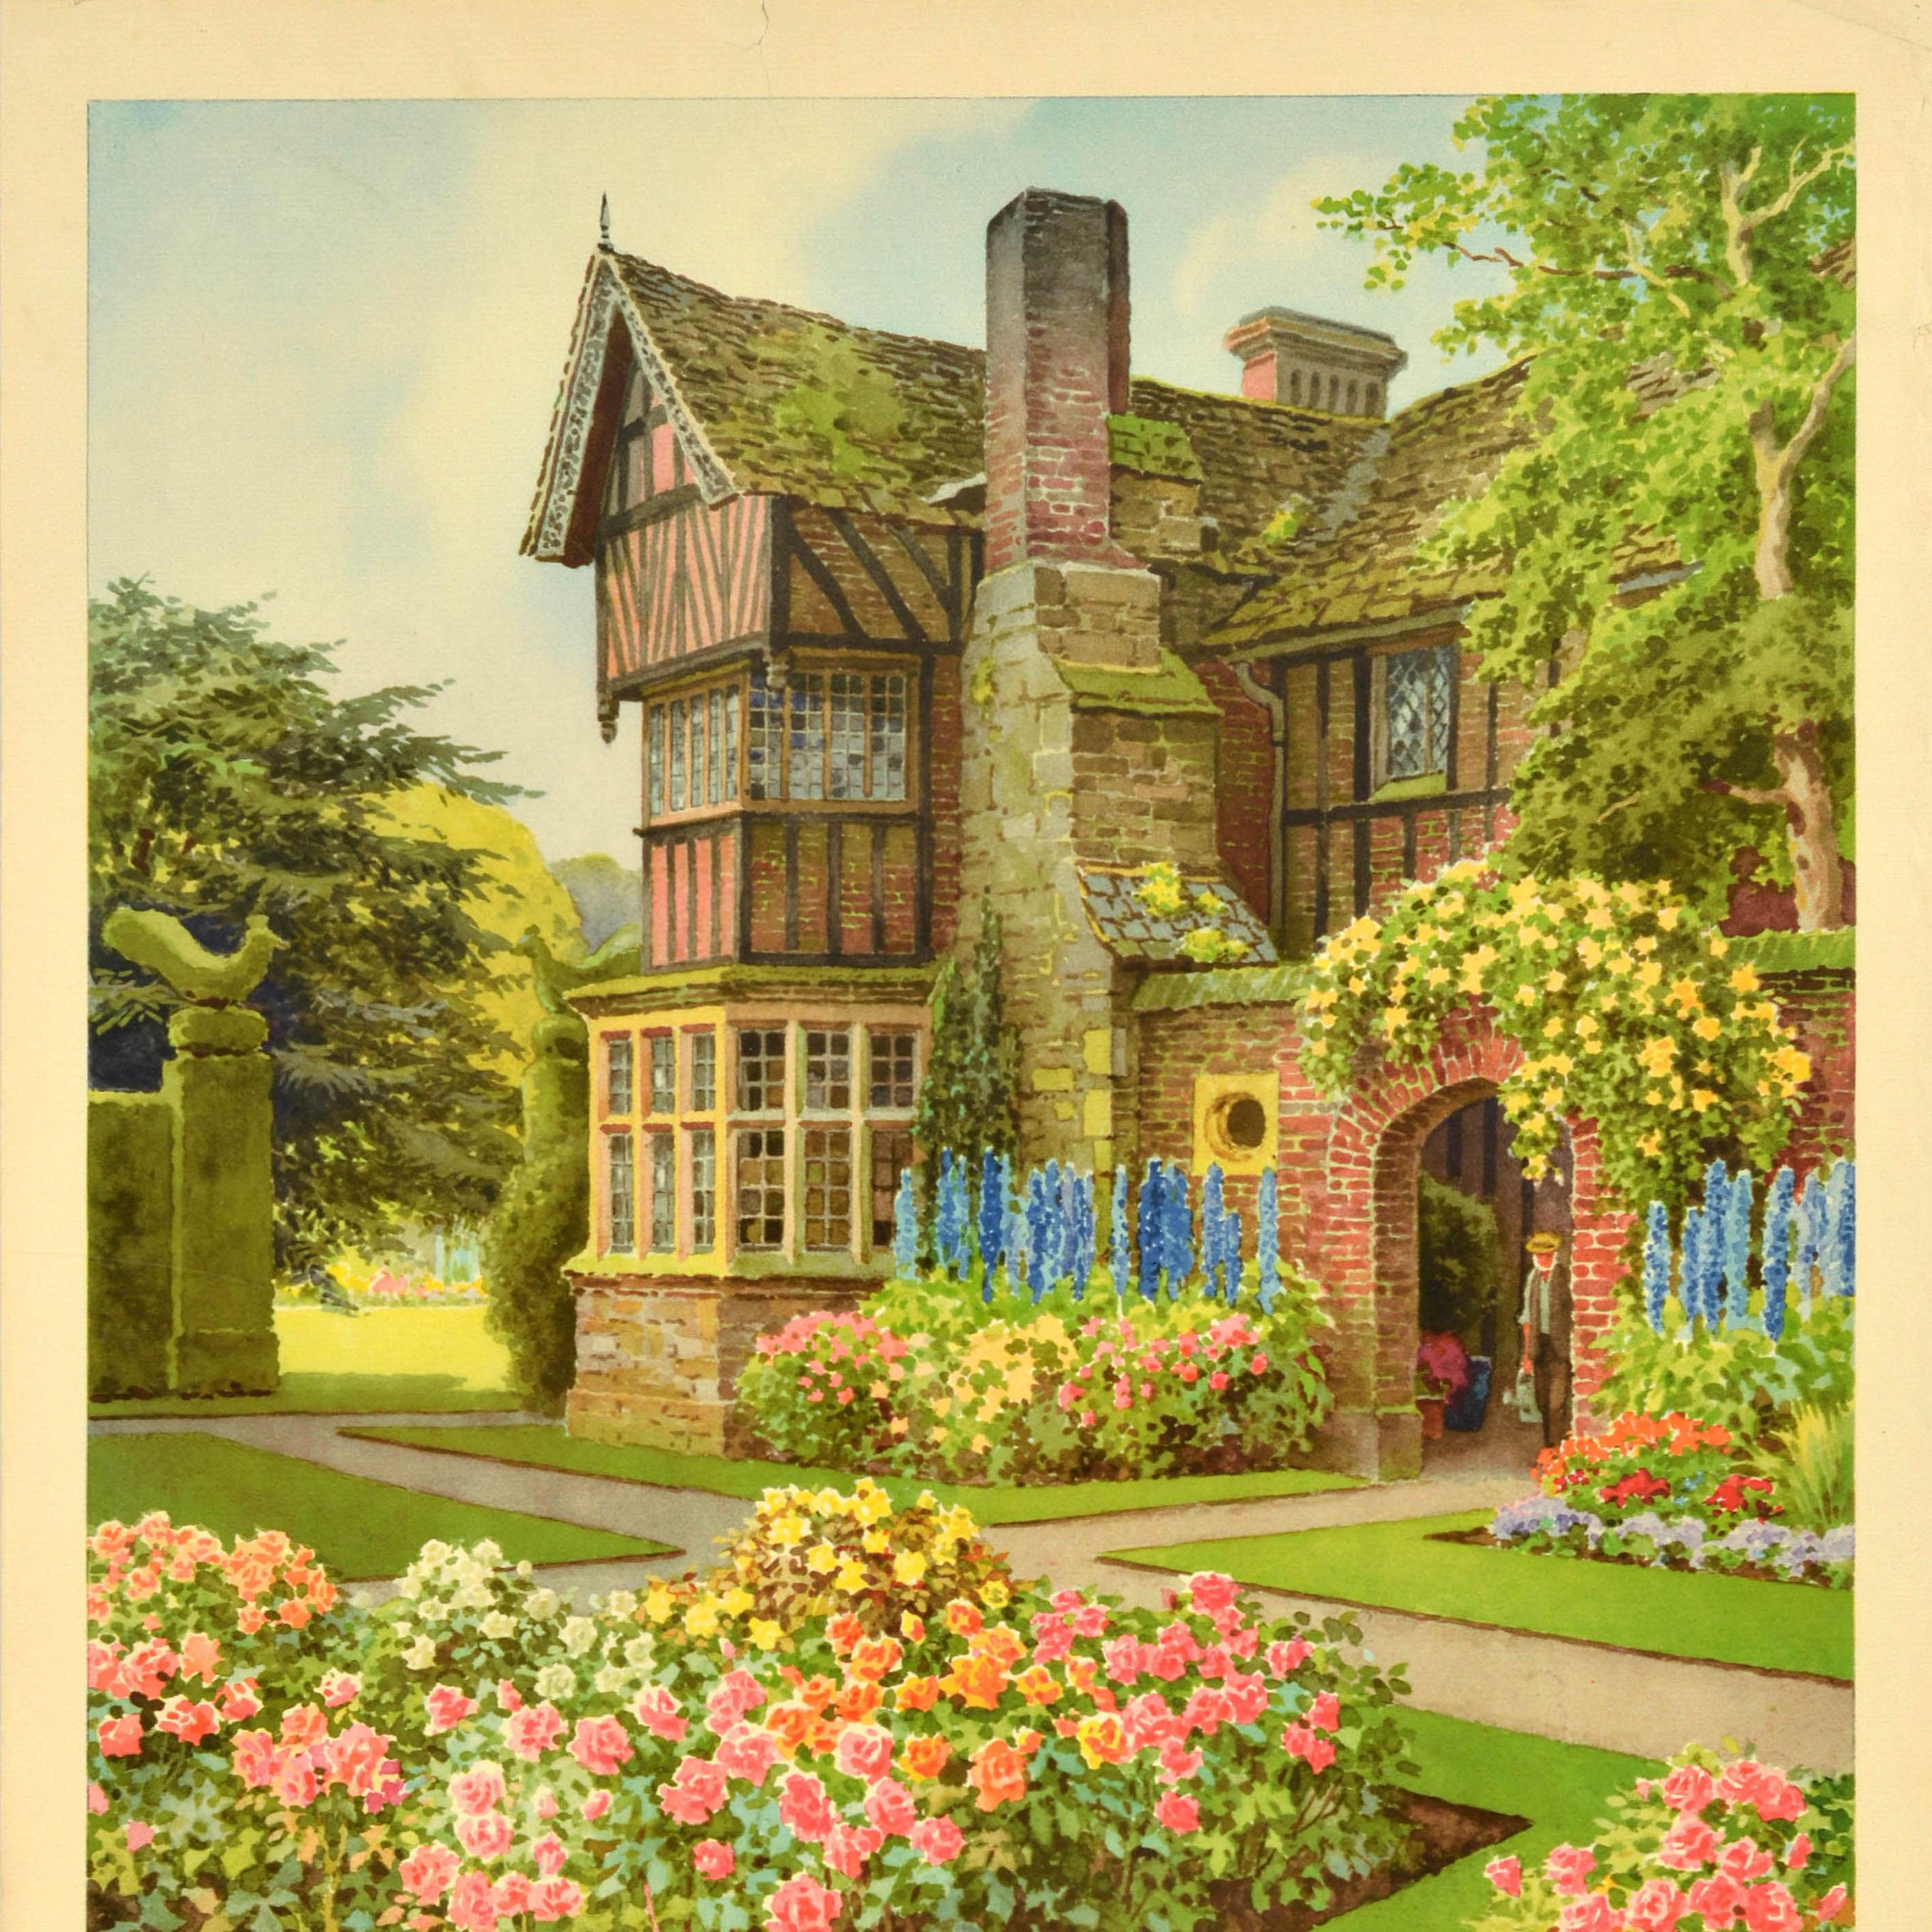 Affiche de voyage vintage originale - Britain in Summer - présentant une superbe image du peintre aquarelliste Ernest William Haslehust (1866-1949) d'un manoir anglais traditionnel avec des parterres de fleurs colorés dans un jardin soigneusement